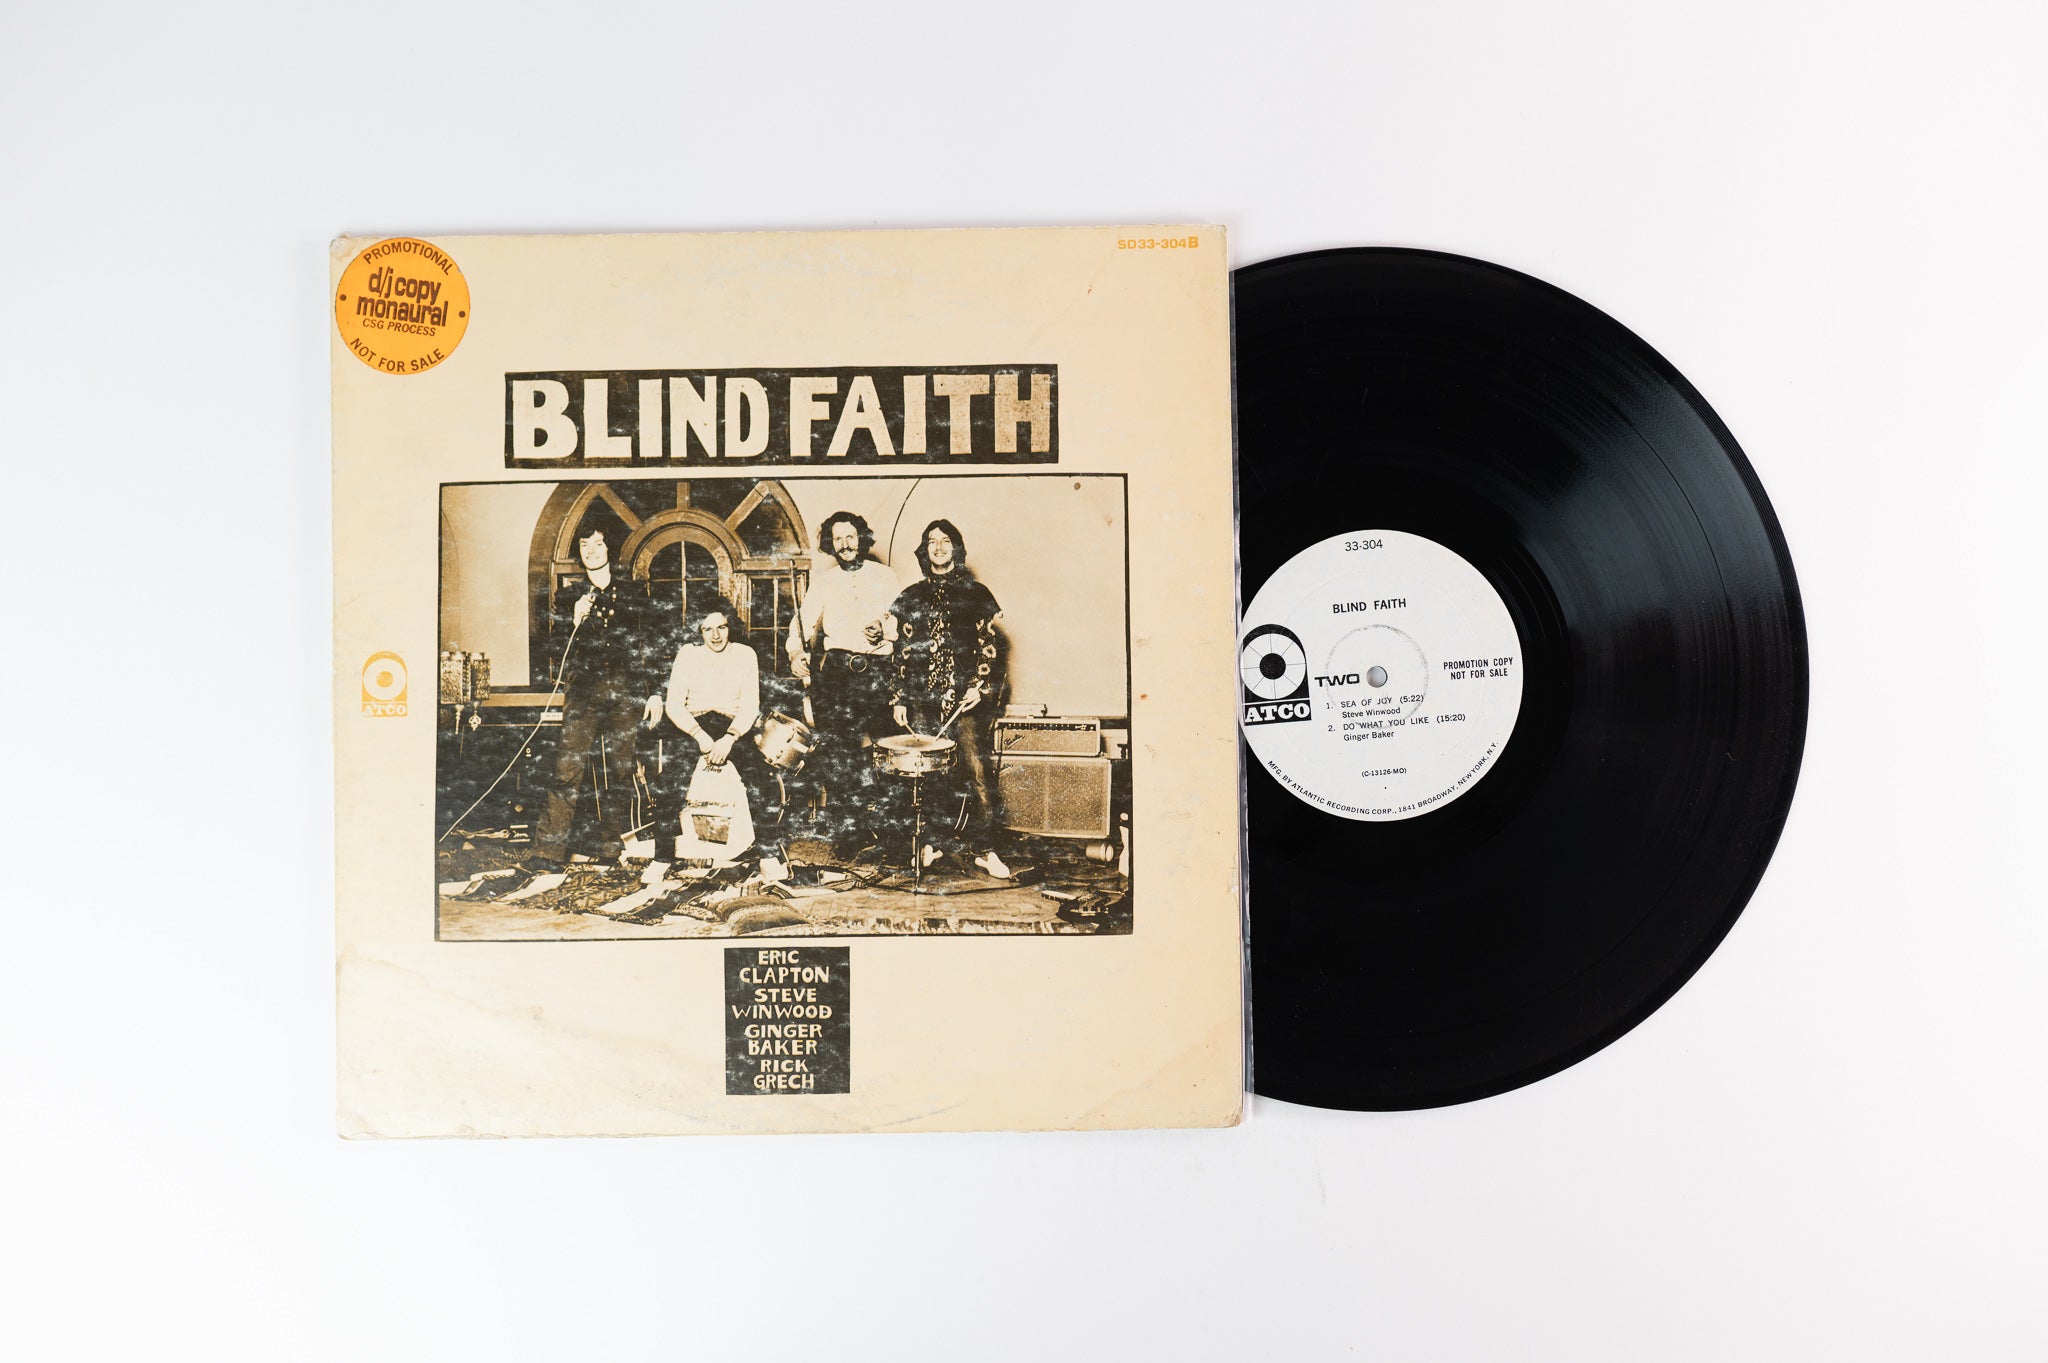 Blind Faith - Blind Faith on Atco Mono Promo